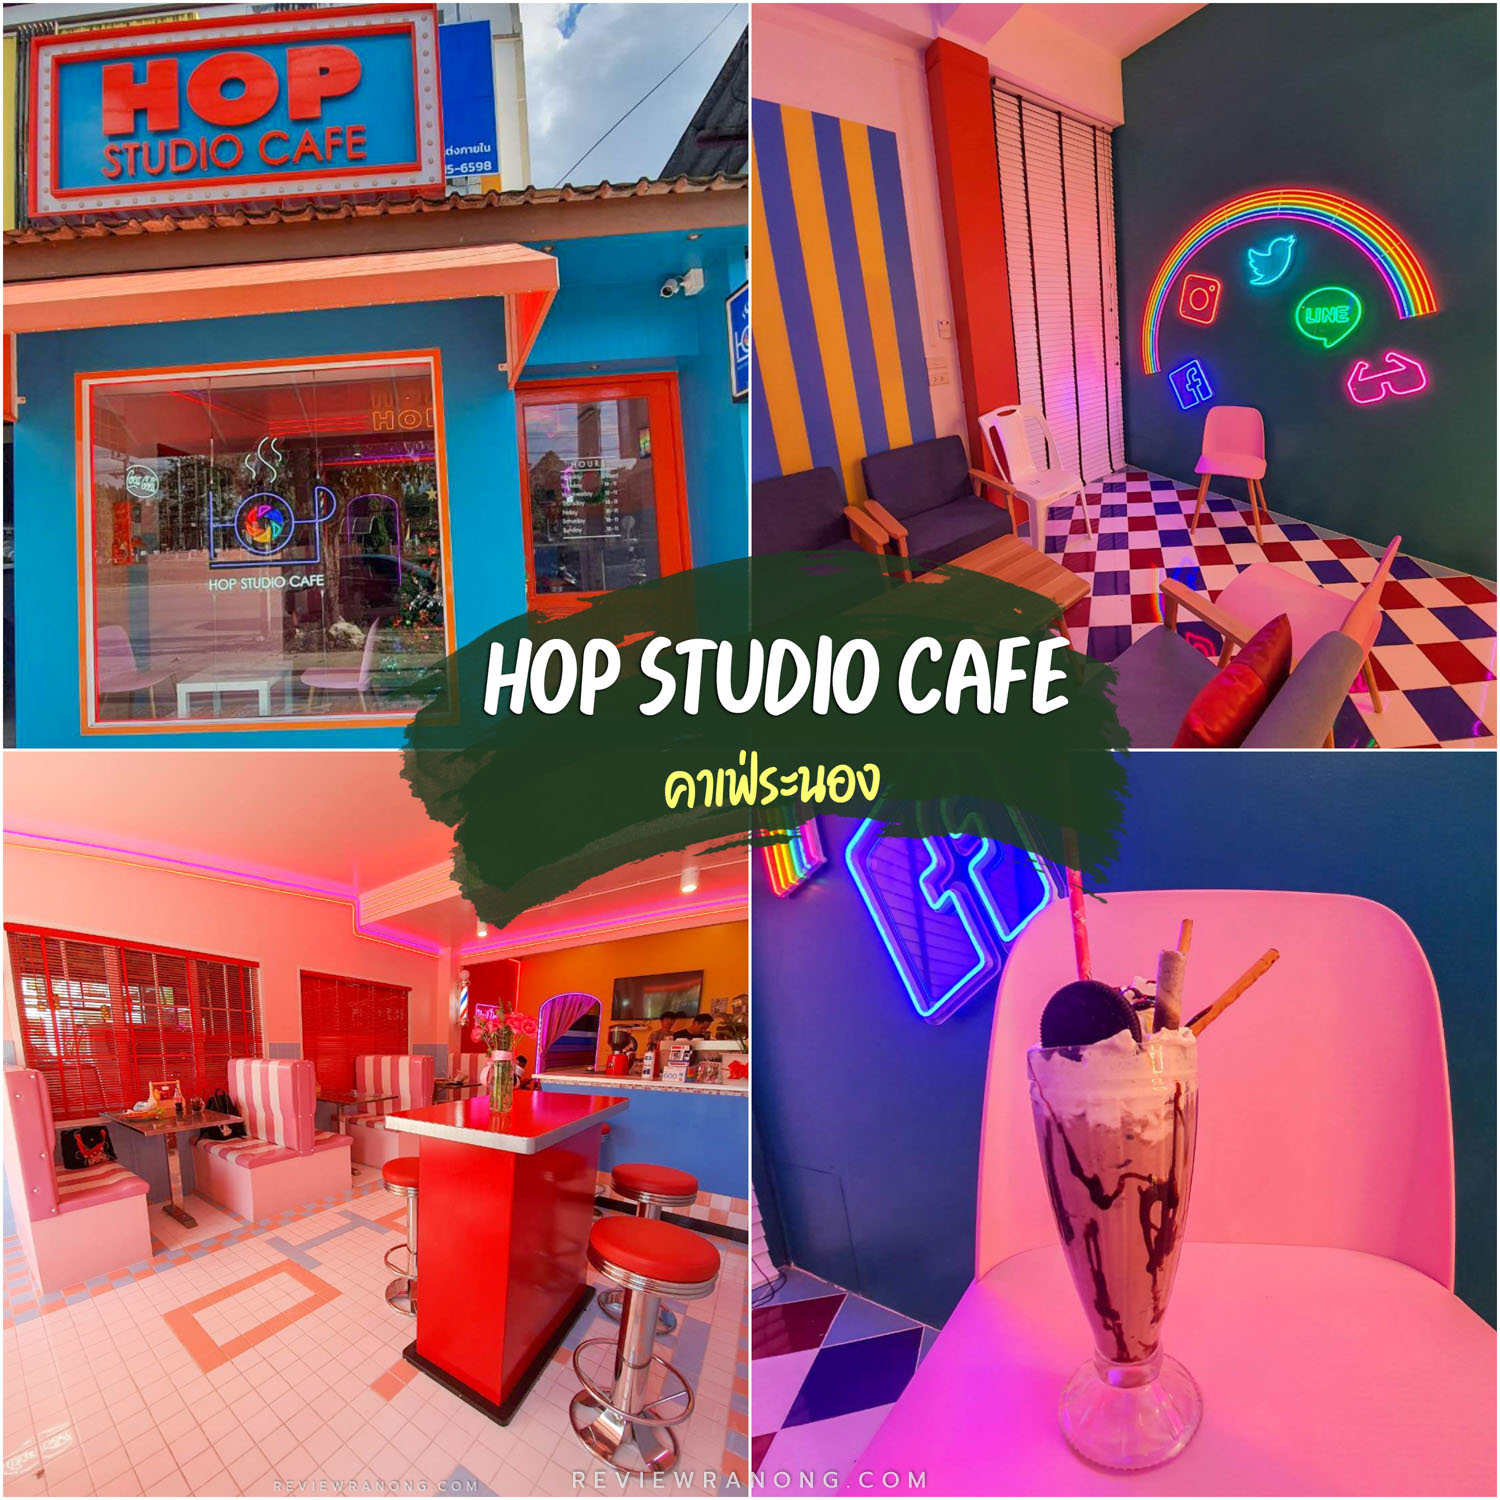 Hop Studio Cafe คาเฟ่ระนอง ร้านชิคๆคูลๆนั่งสบายๆ สไตล์ไม่เหมือนใคร